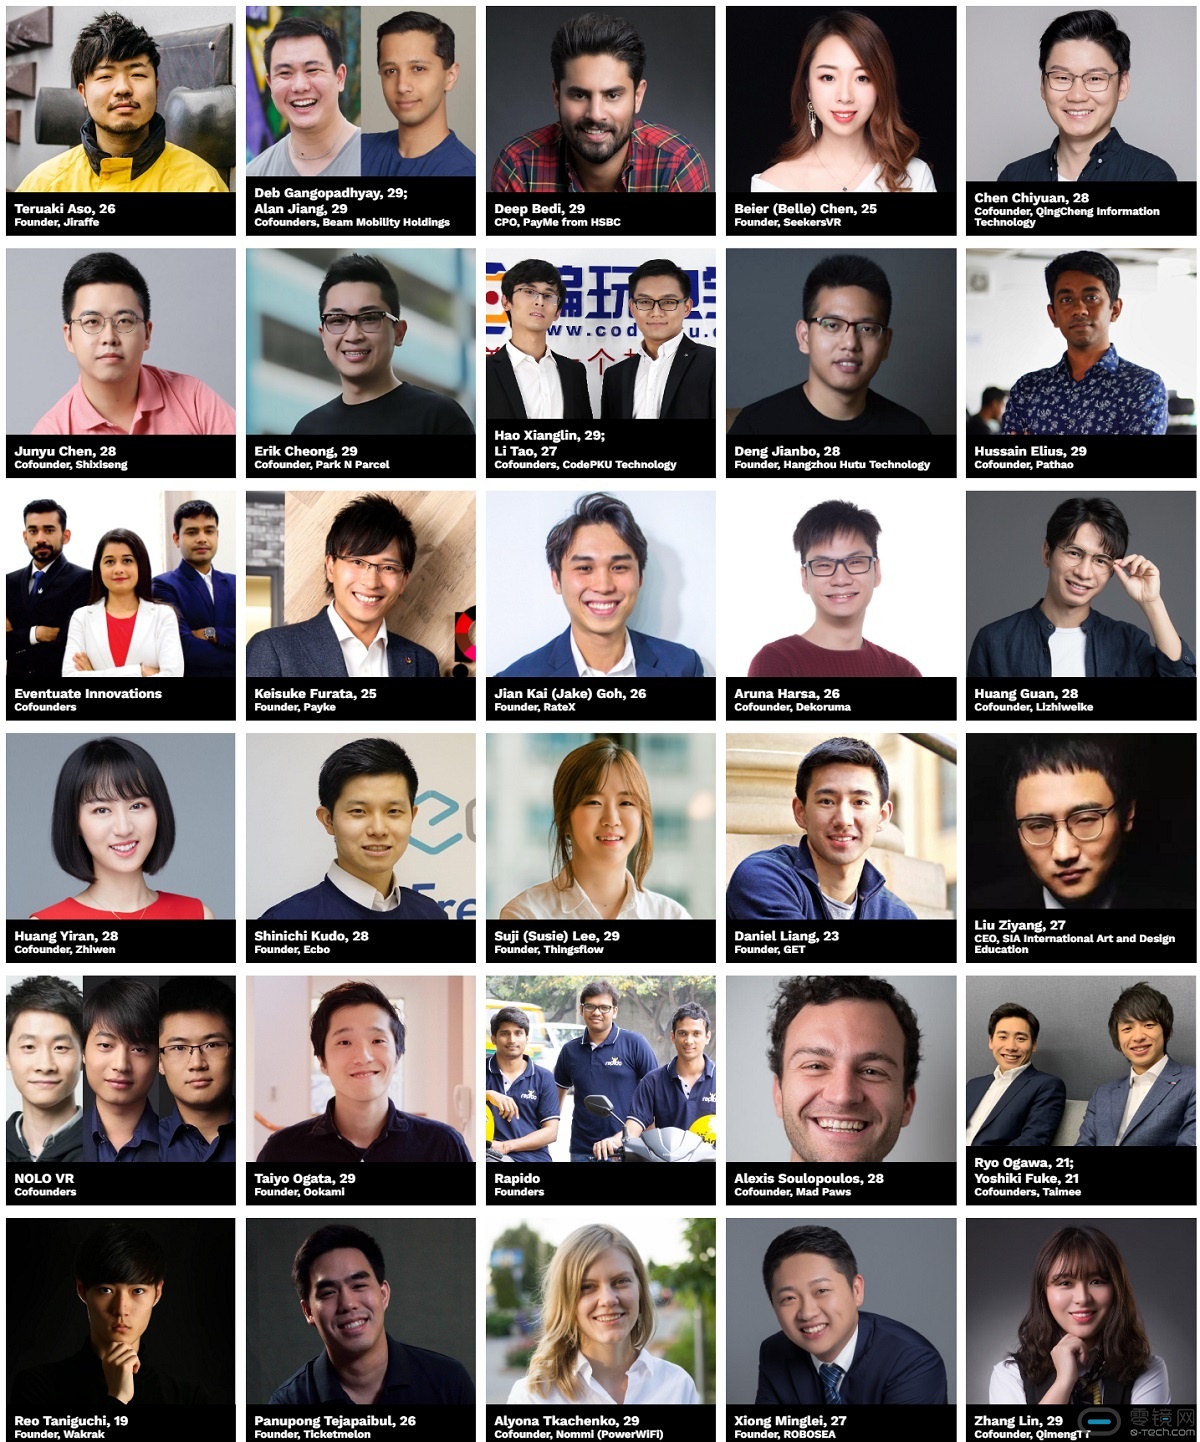 福布斯公布2019亚洲“30位30岁以下精英”榜，NOLO VR三位创始人共同入选  image